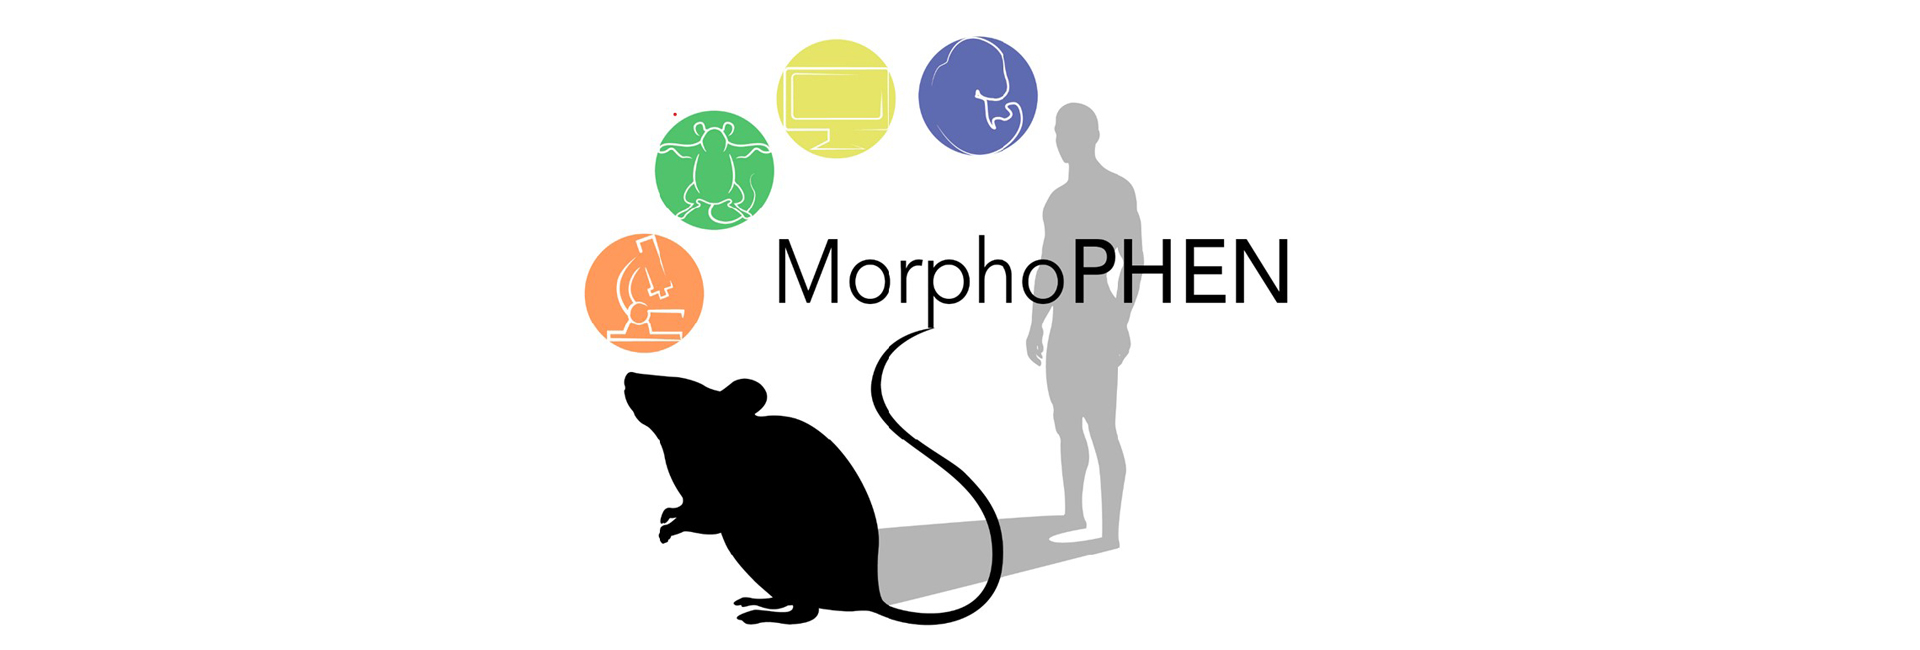 Master MorphoPHEN